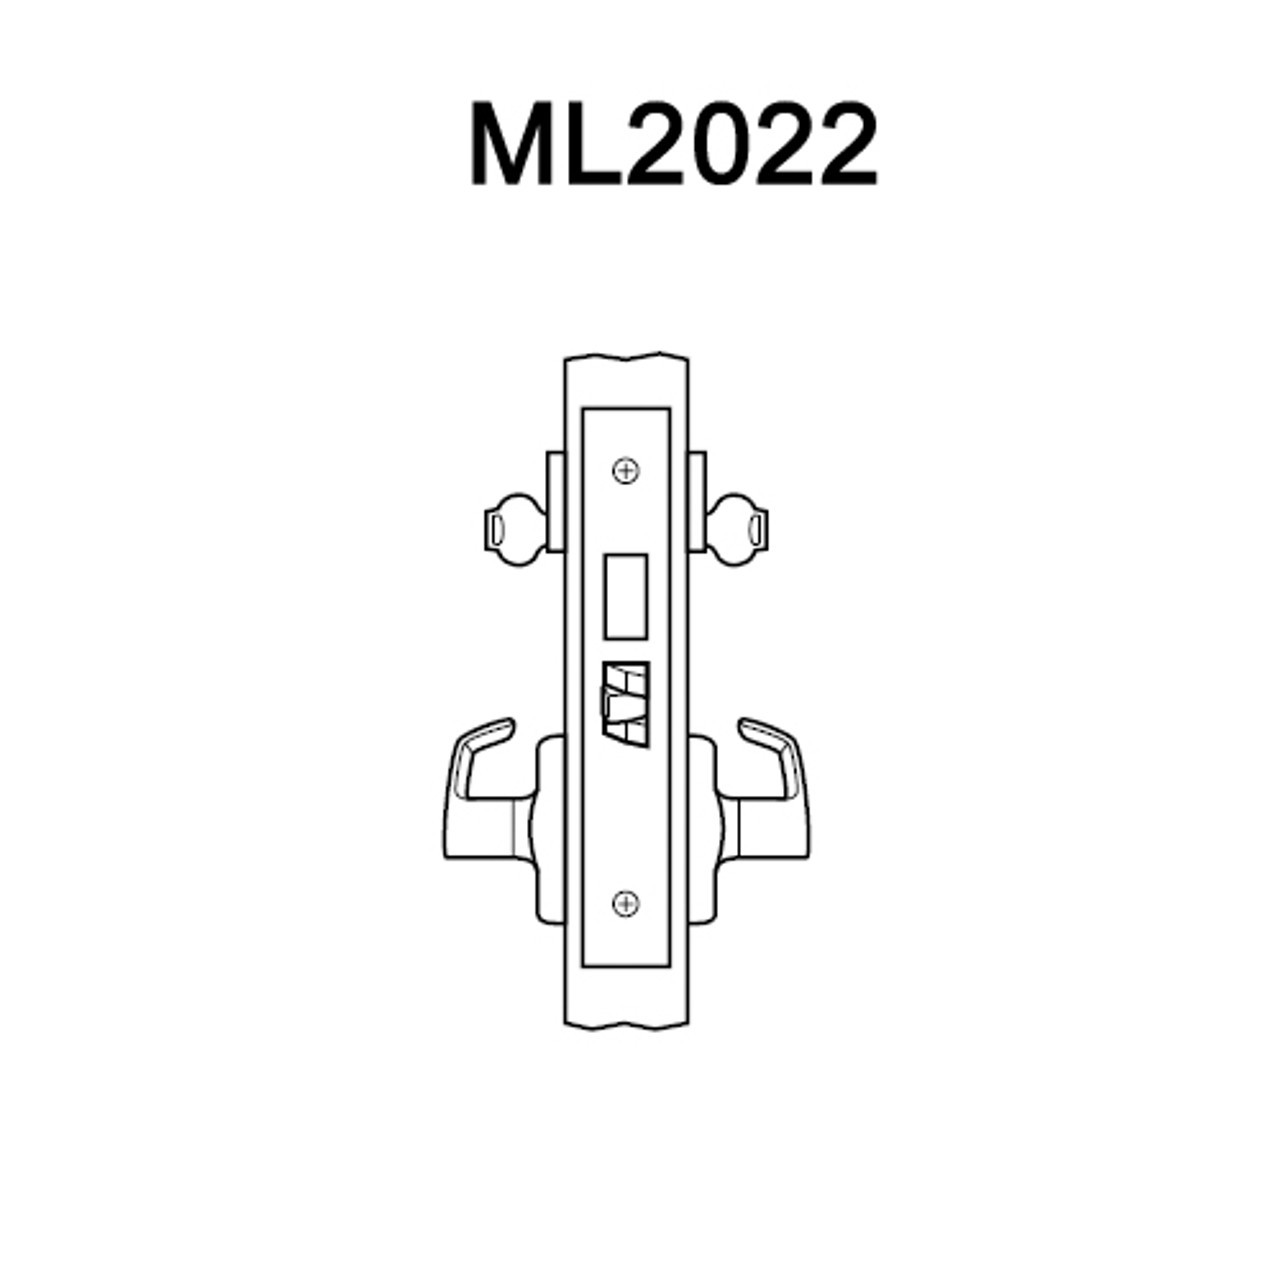 ML2022-RWM-619-M31 Corbin Russwin ML2000 Series Mortise Store Door Trim Pack with Regis Lever with Deadbolt in Satin Nickel